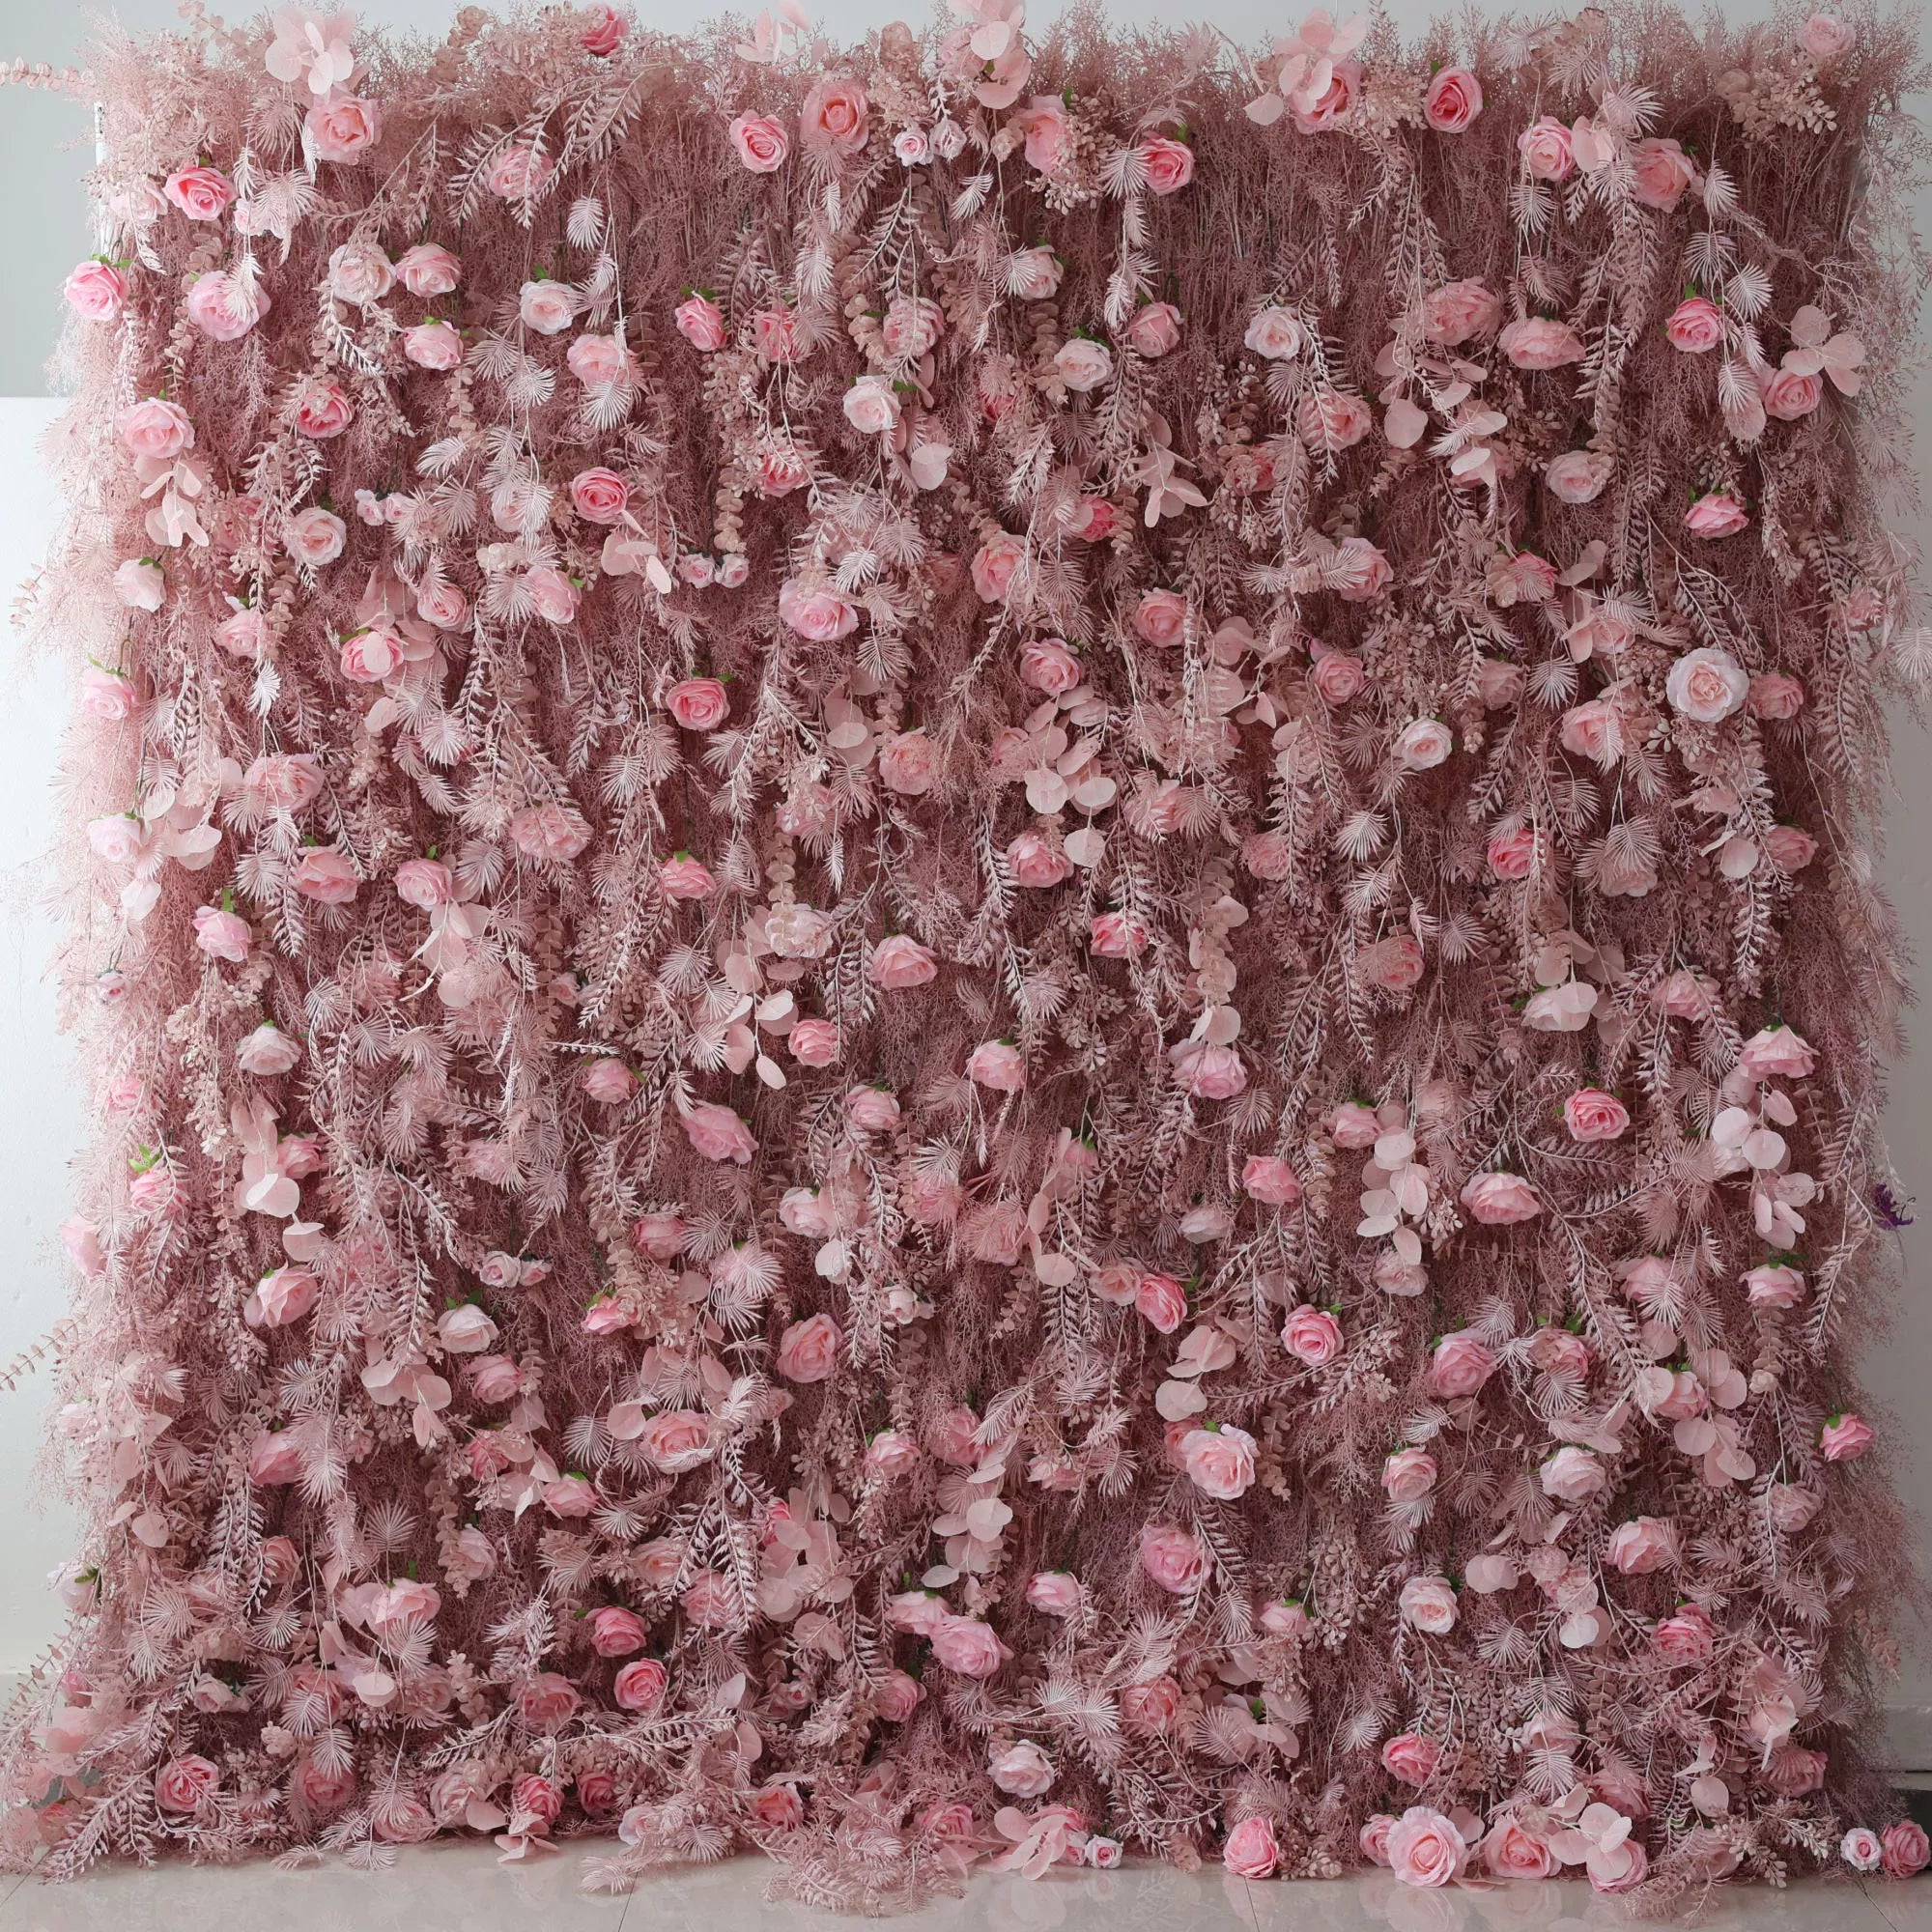 Mur de fleurs rose rougissant avec des accents de fougères givrées : la romance rencontre la fantaisie pour des célébrations sophistiquées-VF-202-3